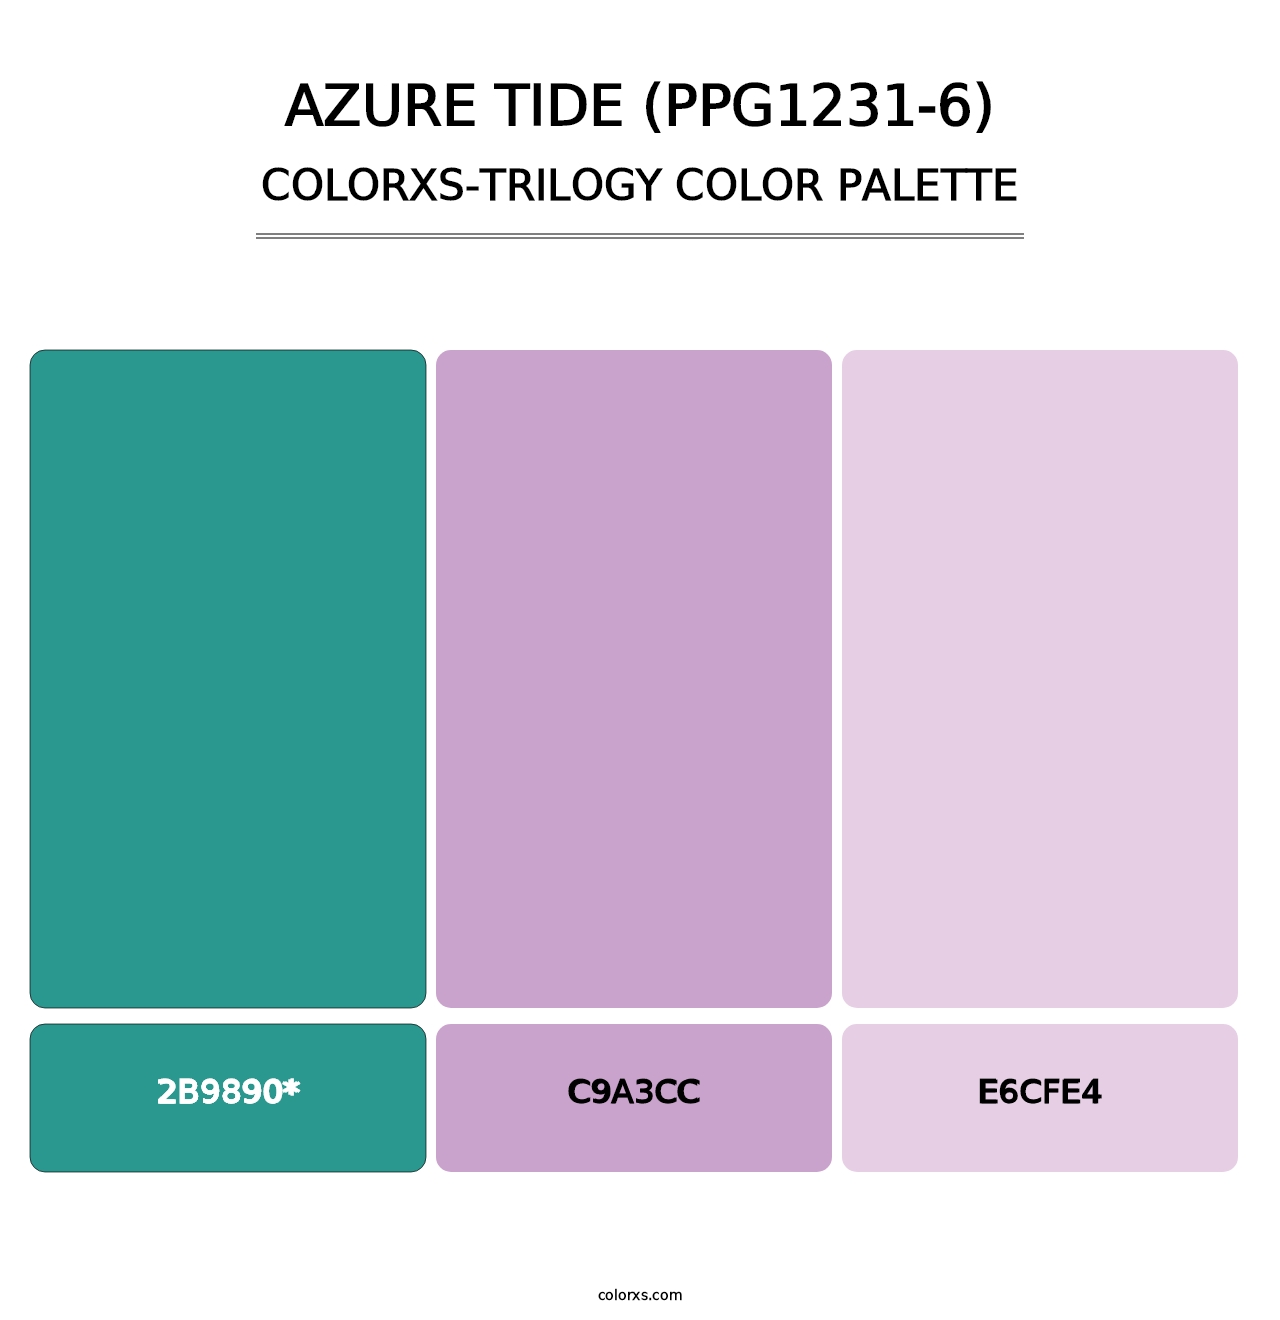 Azure Tide (PPG1231-6) - Colorxs Trilogy Palette